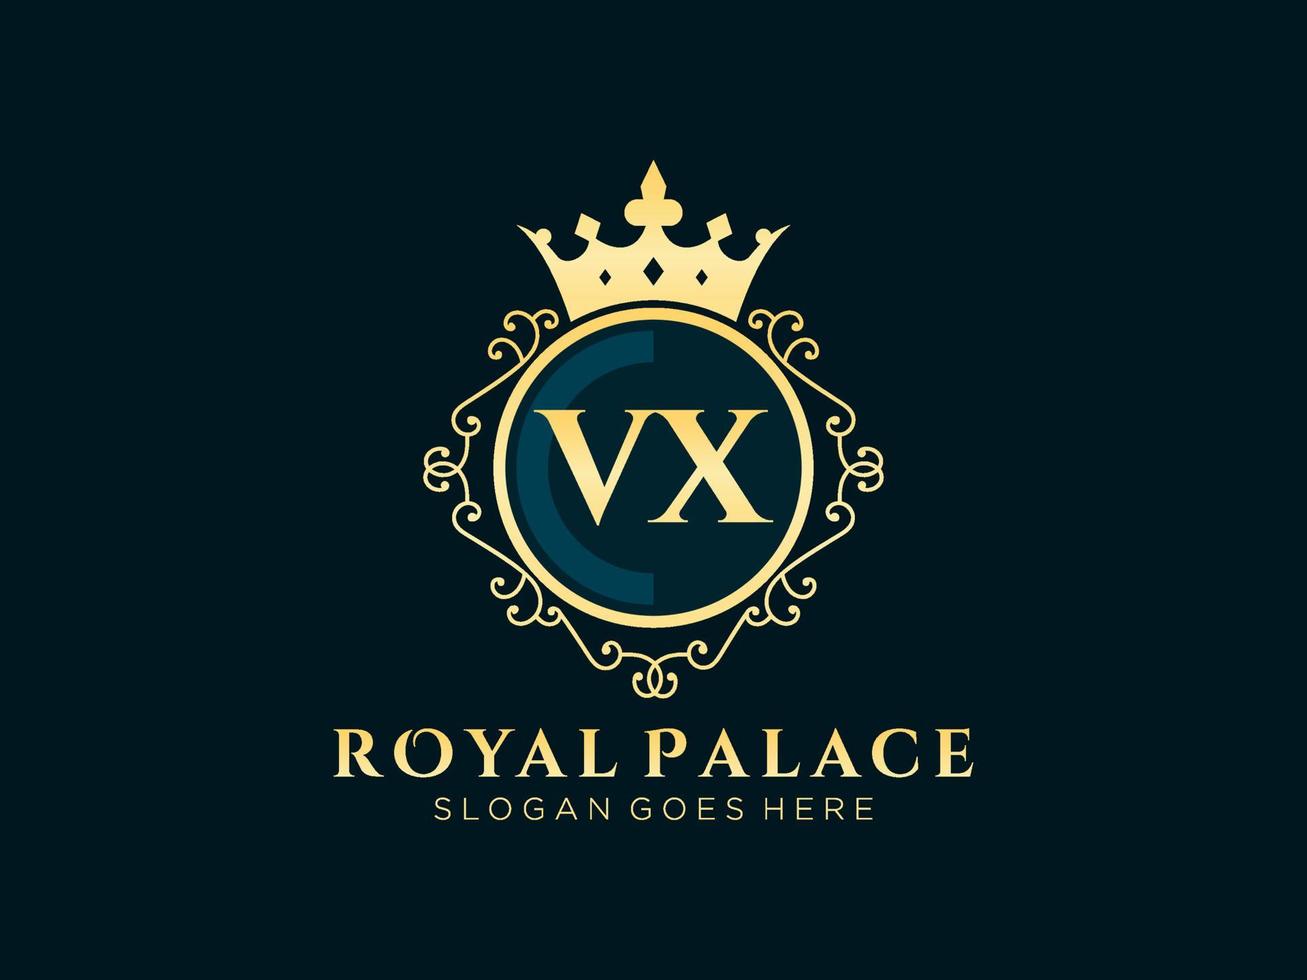 lettera vx antico reale lusso vittoriano logo con ornamentale telaio. vettore